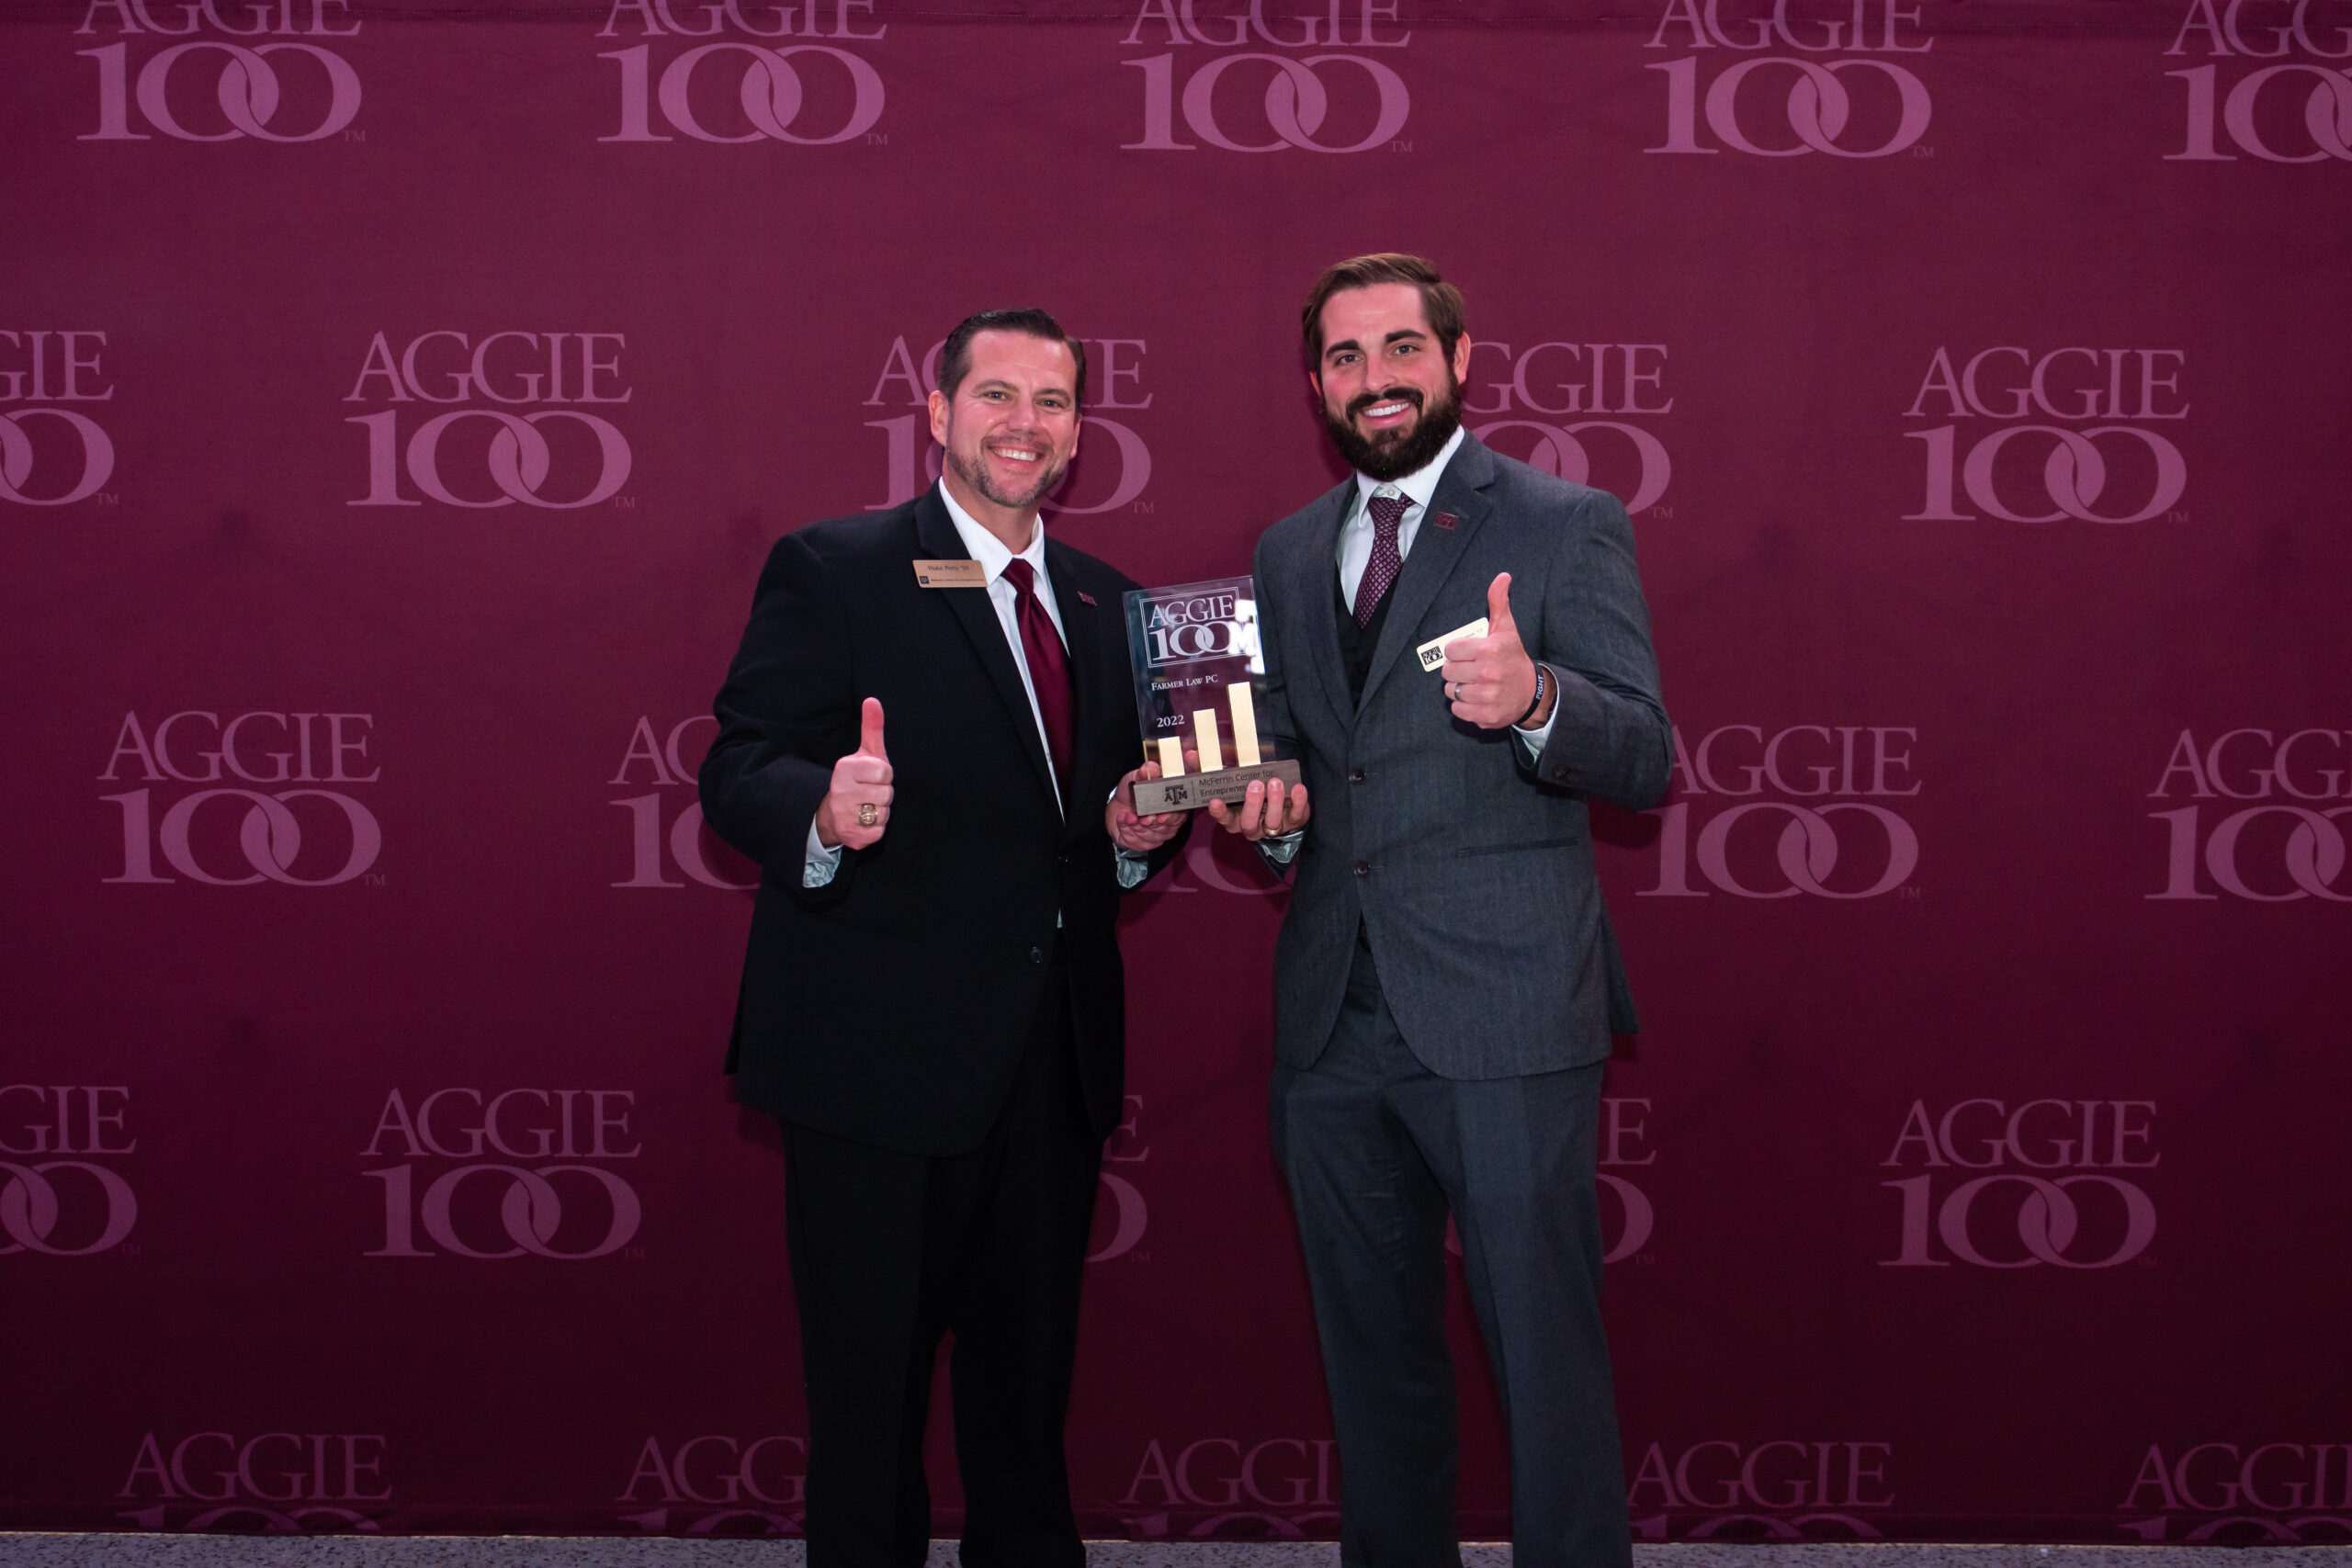 Aggie-100-award